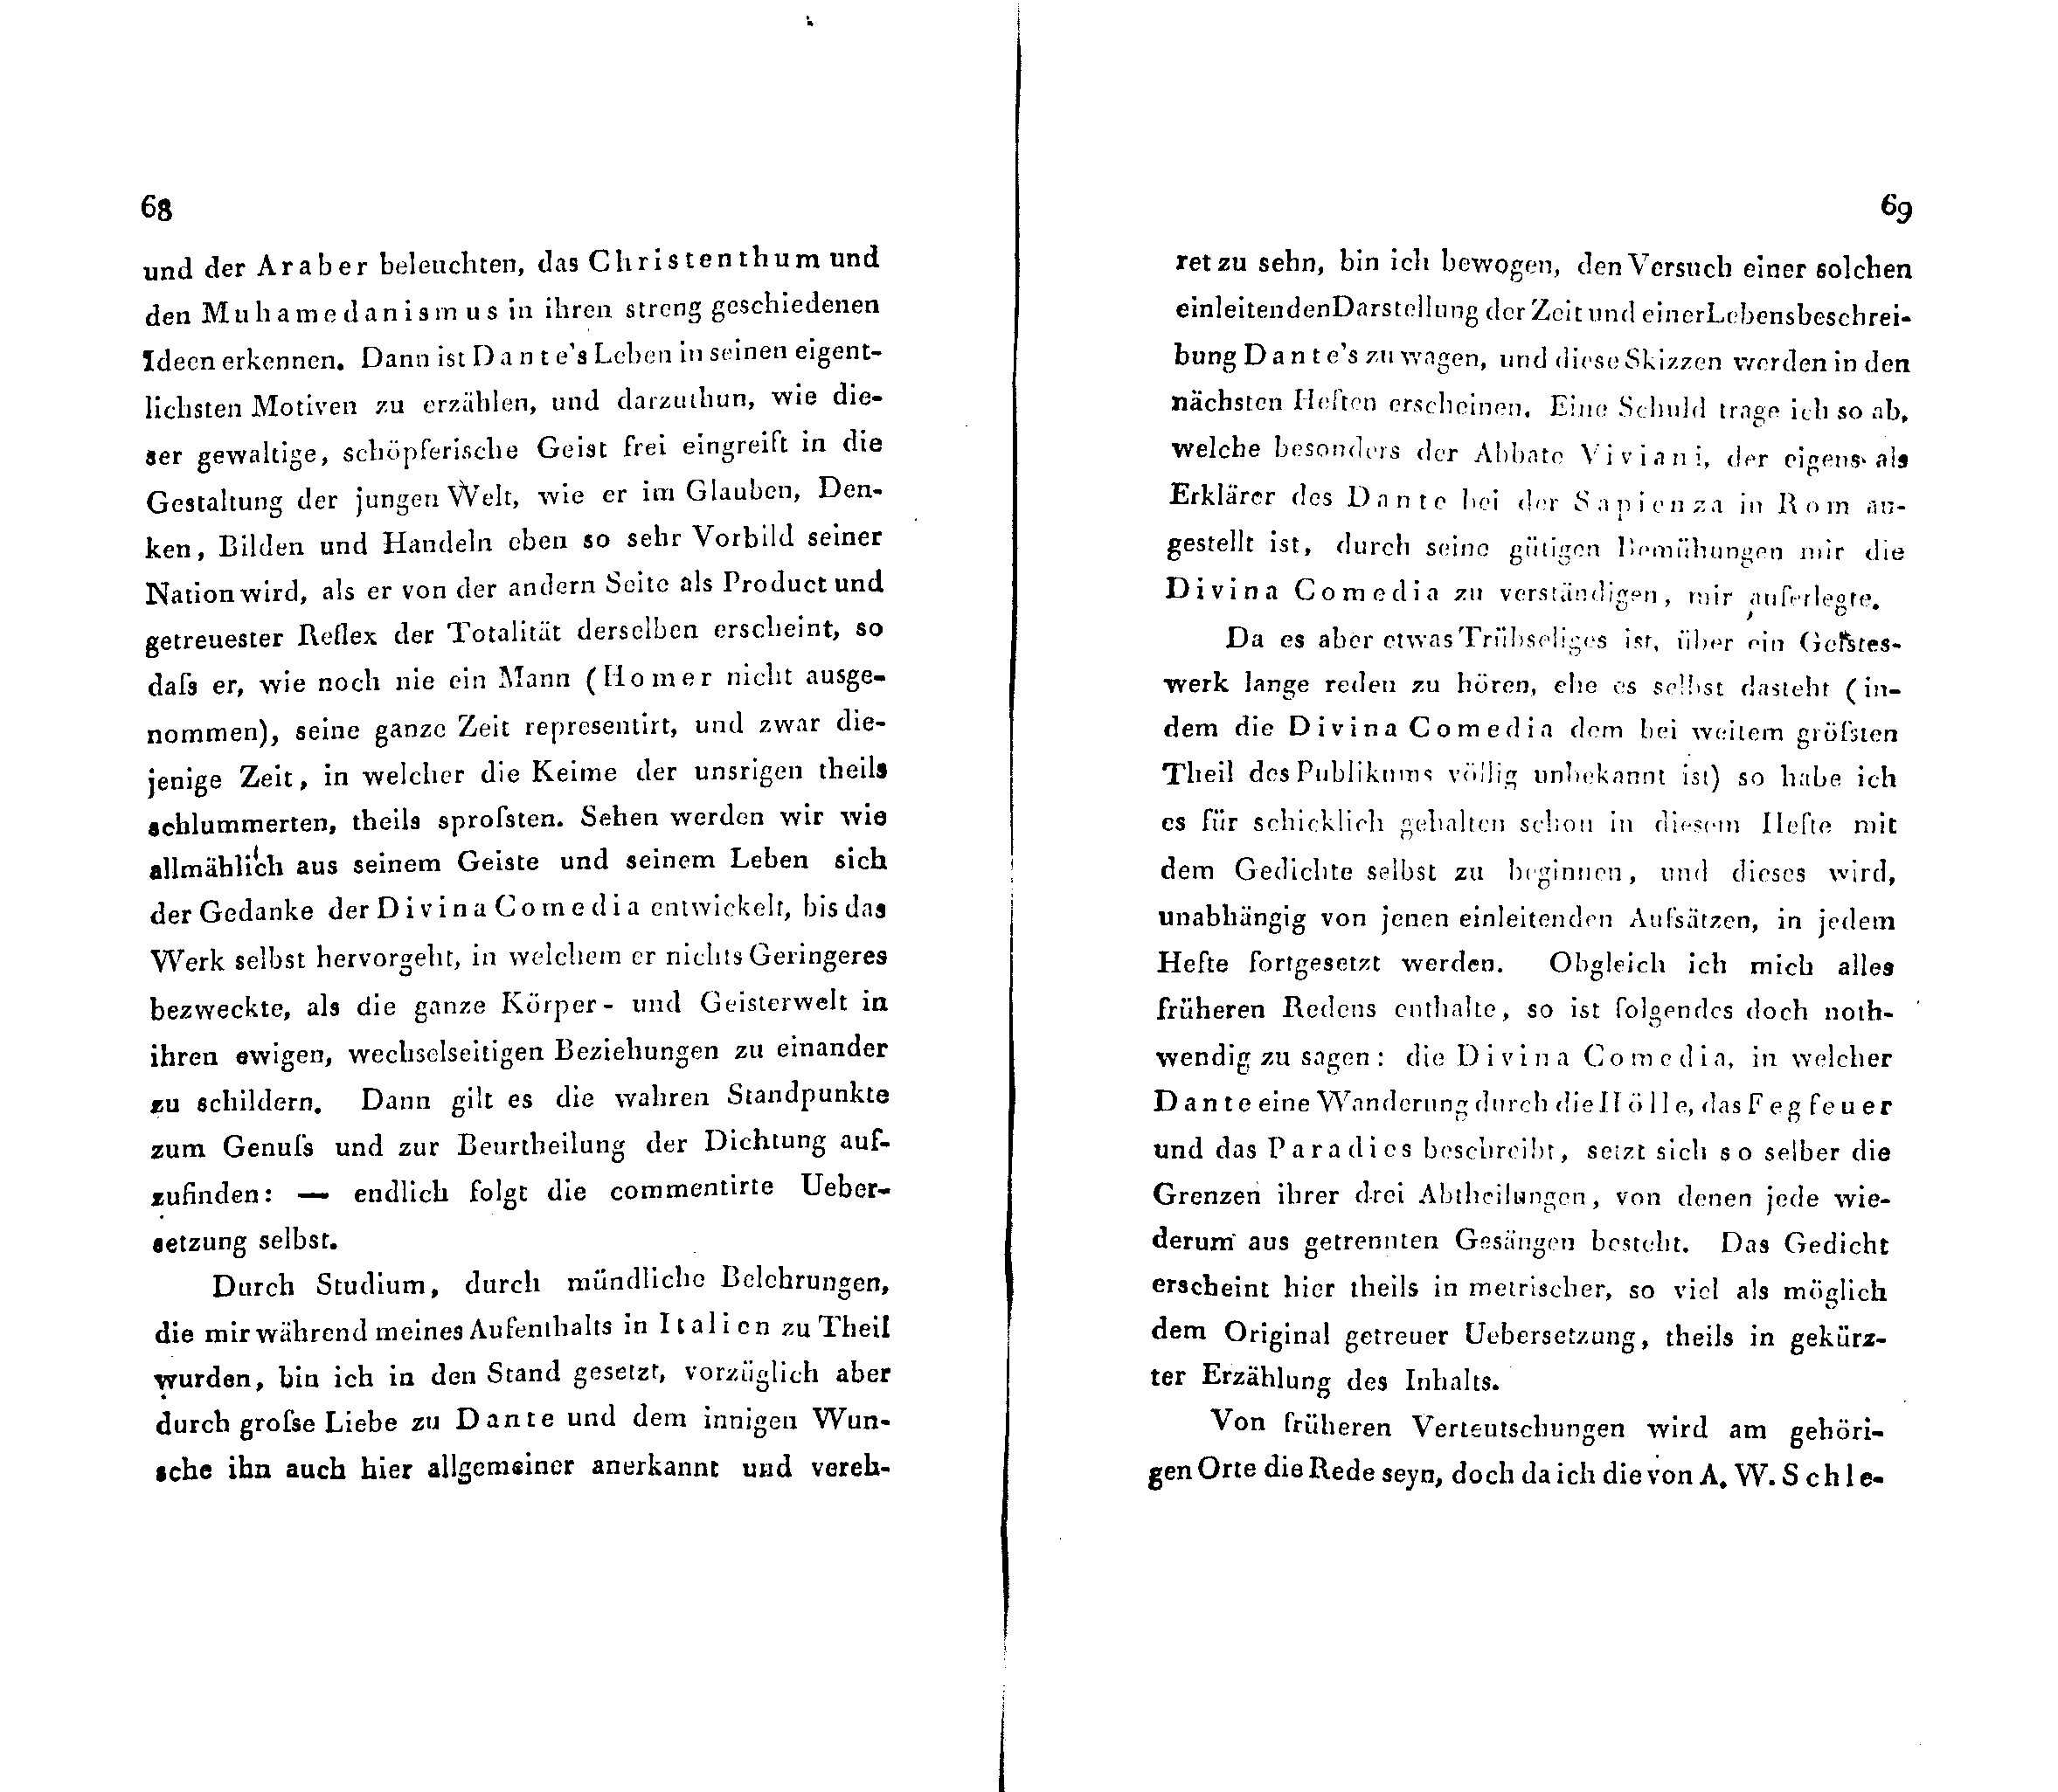 Ueber Dante Alighieri, seine Zeit und seine Divina Comedia [1] (1824) | 2. (68-69) Haupttext